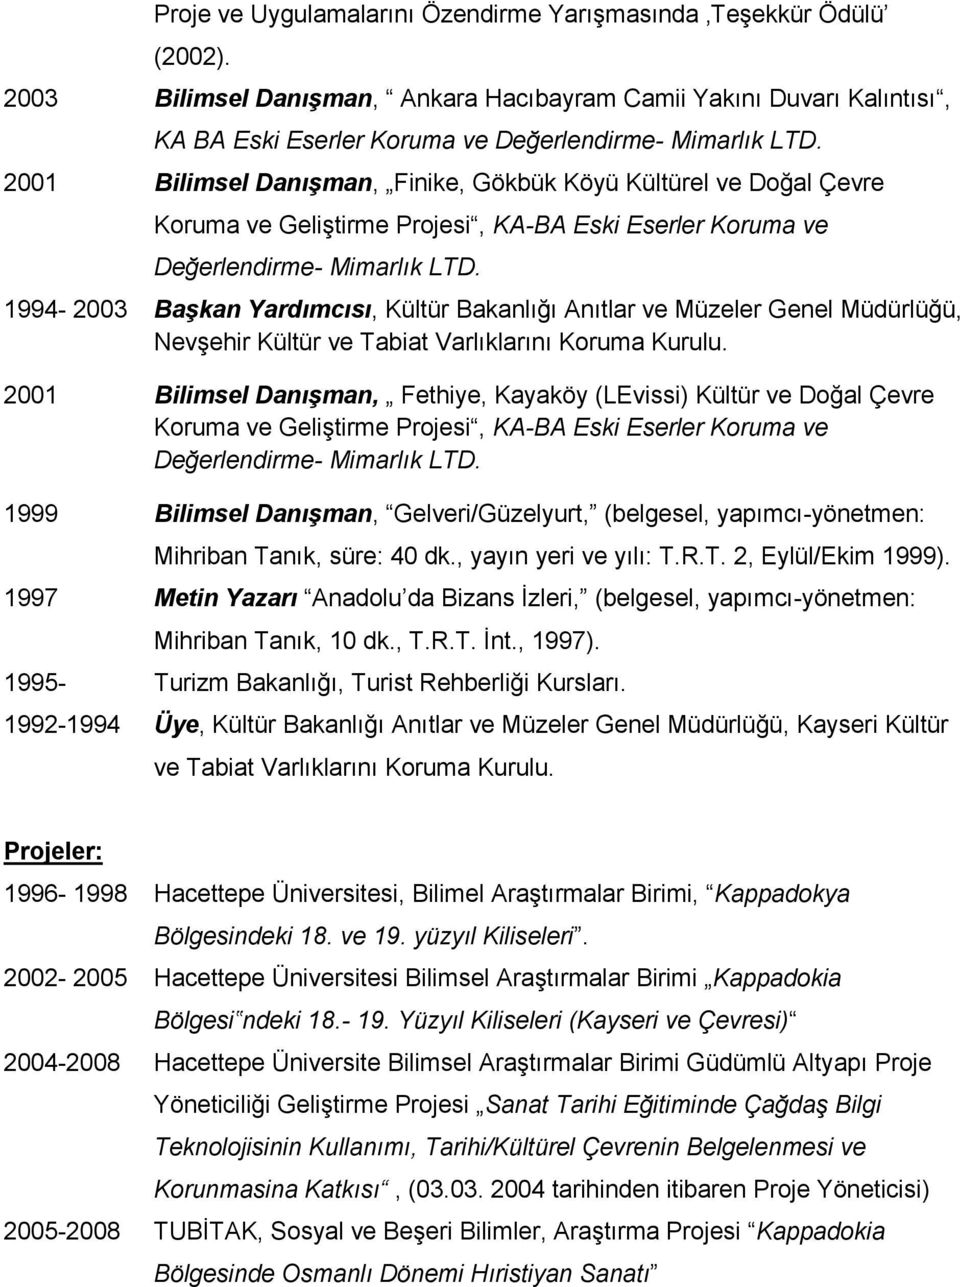 1994-2003 Başkan Yardımcısı, Kültür Bakanlığı Anıtlar ve Müzeler Genel Müdürlüğü, Nevşehir Kültür ve Tabiat Varlıklarını Koruma Kurulu.